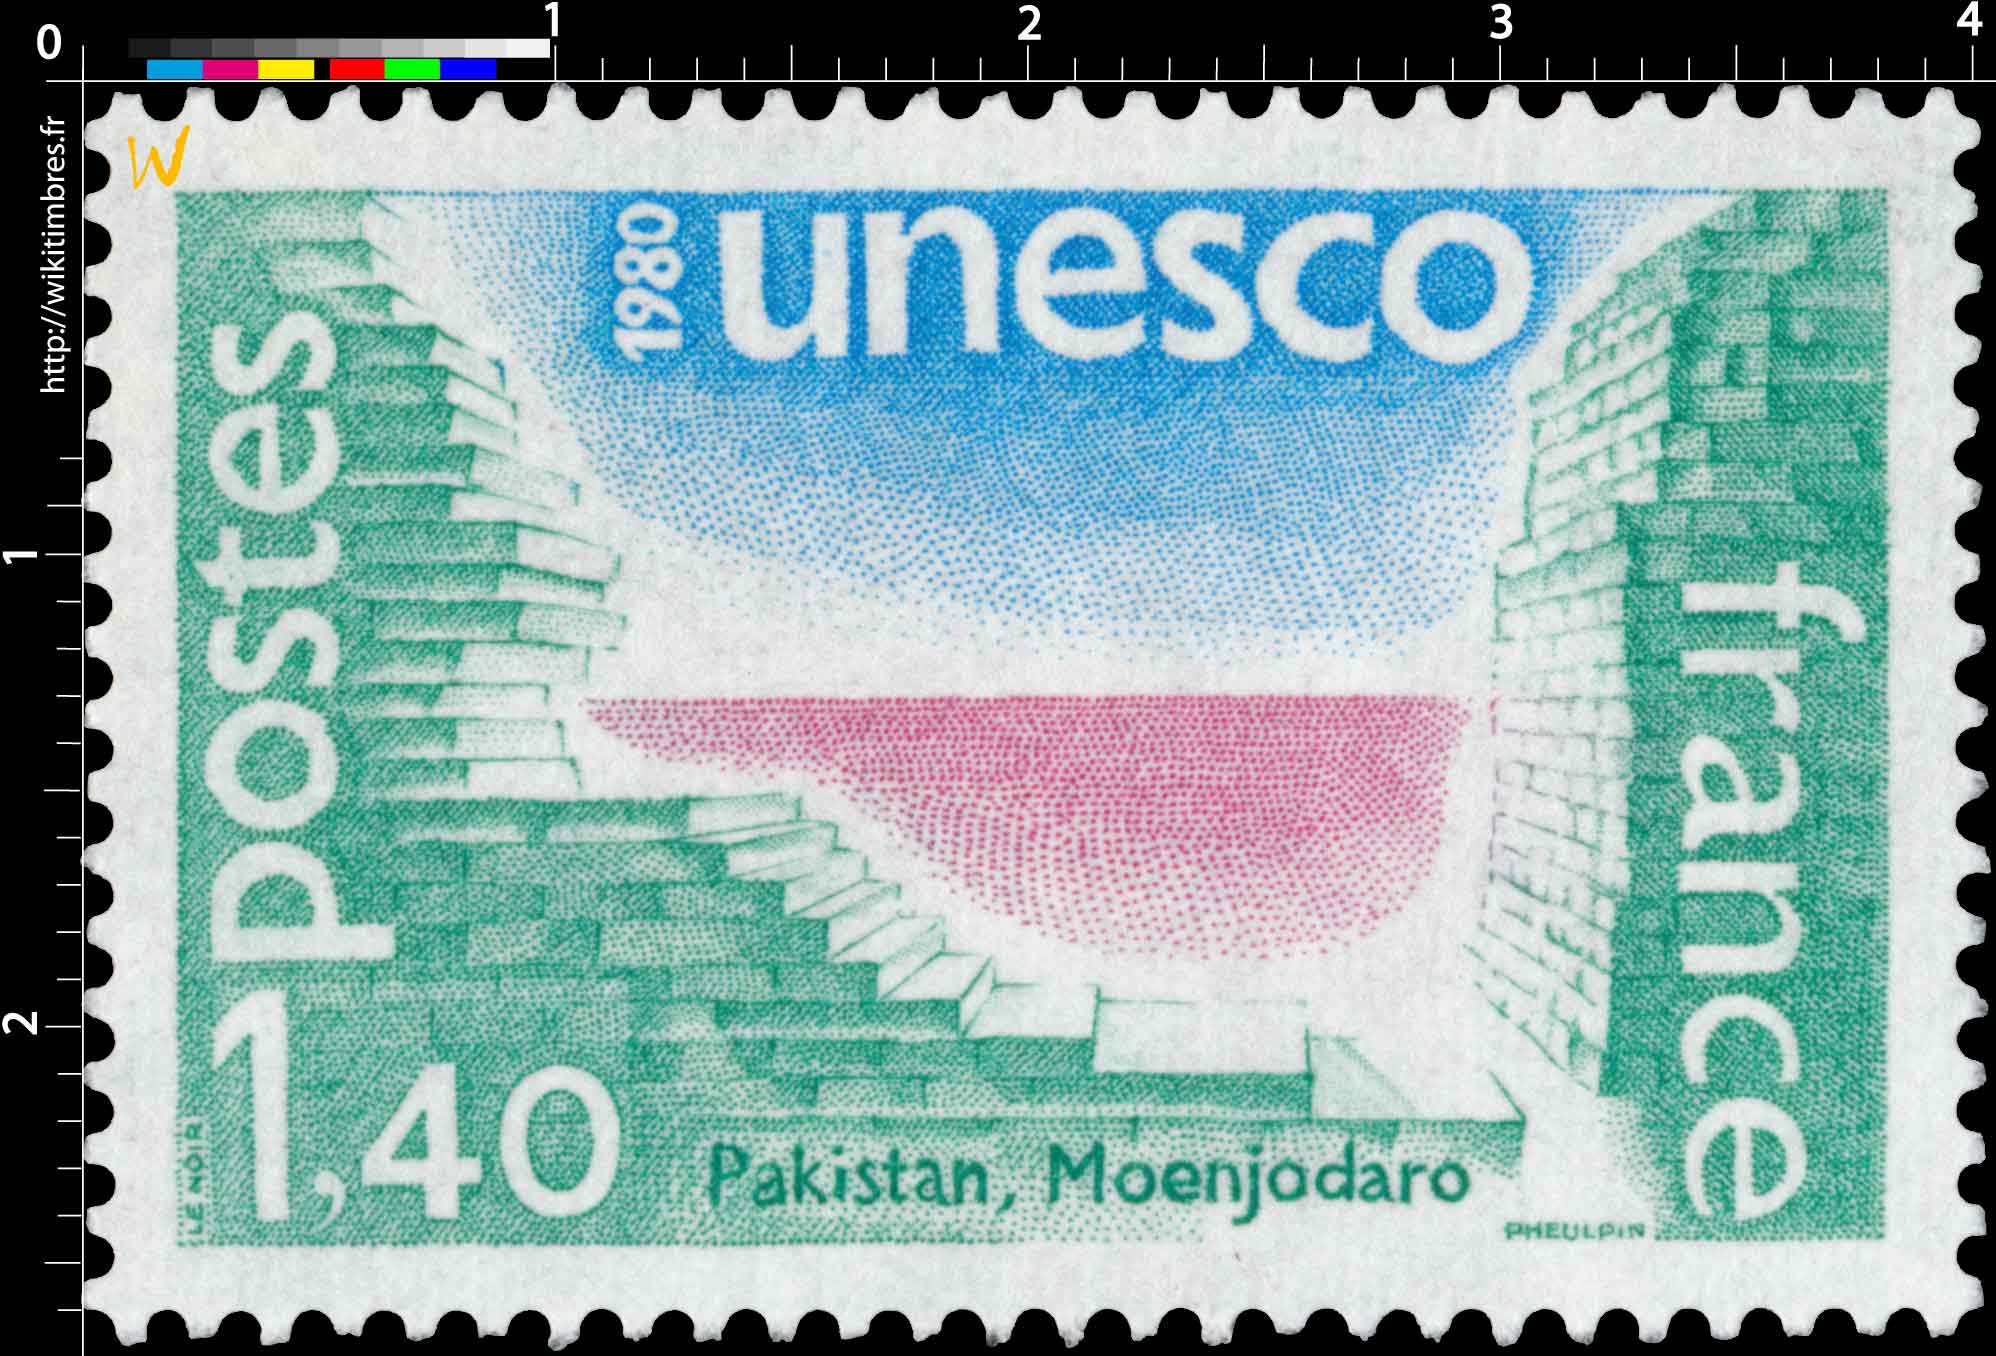 1980 Unesco Pakistan, Moenjodaro